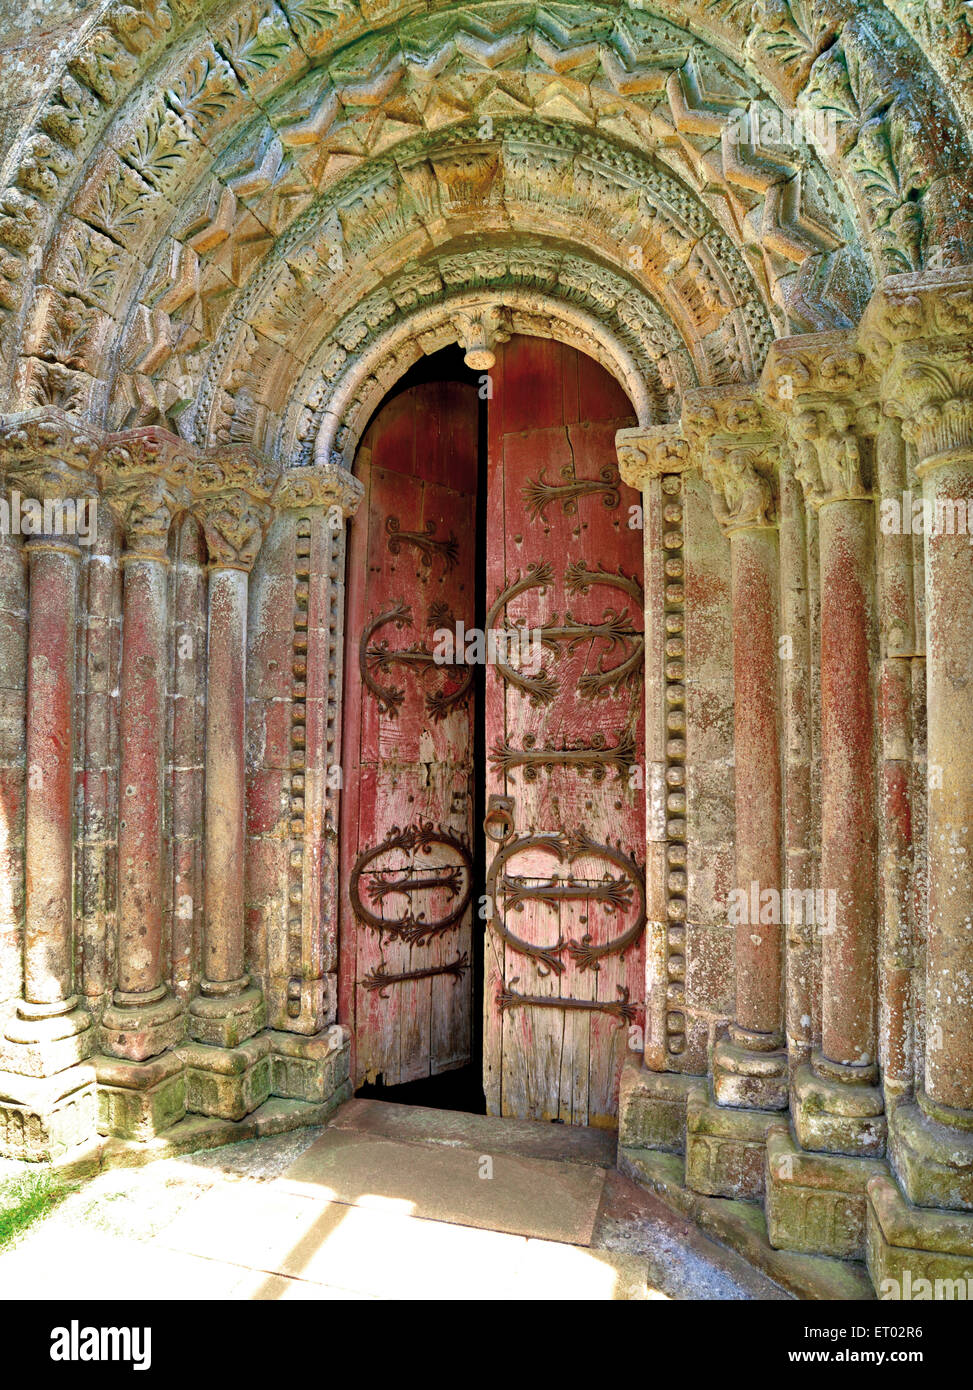 Spain, Galicia: Romanesque portal of the picturesque church Vilar de Donas Stock Photo